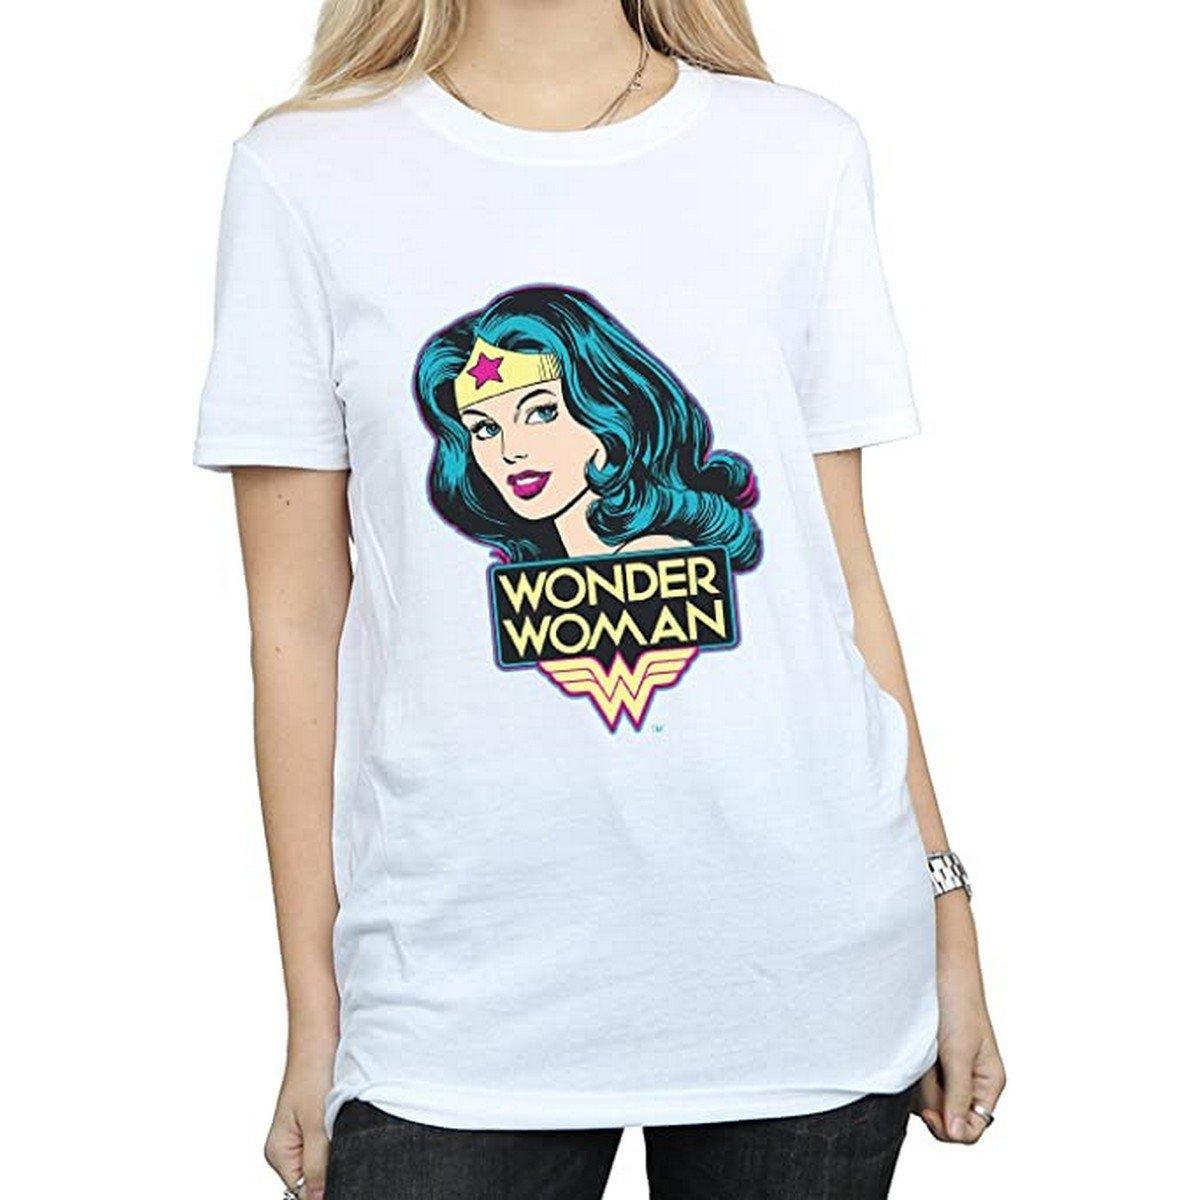 Tshirt Damen Weiss M von Wonder Woman